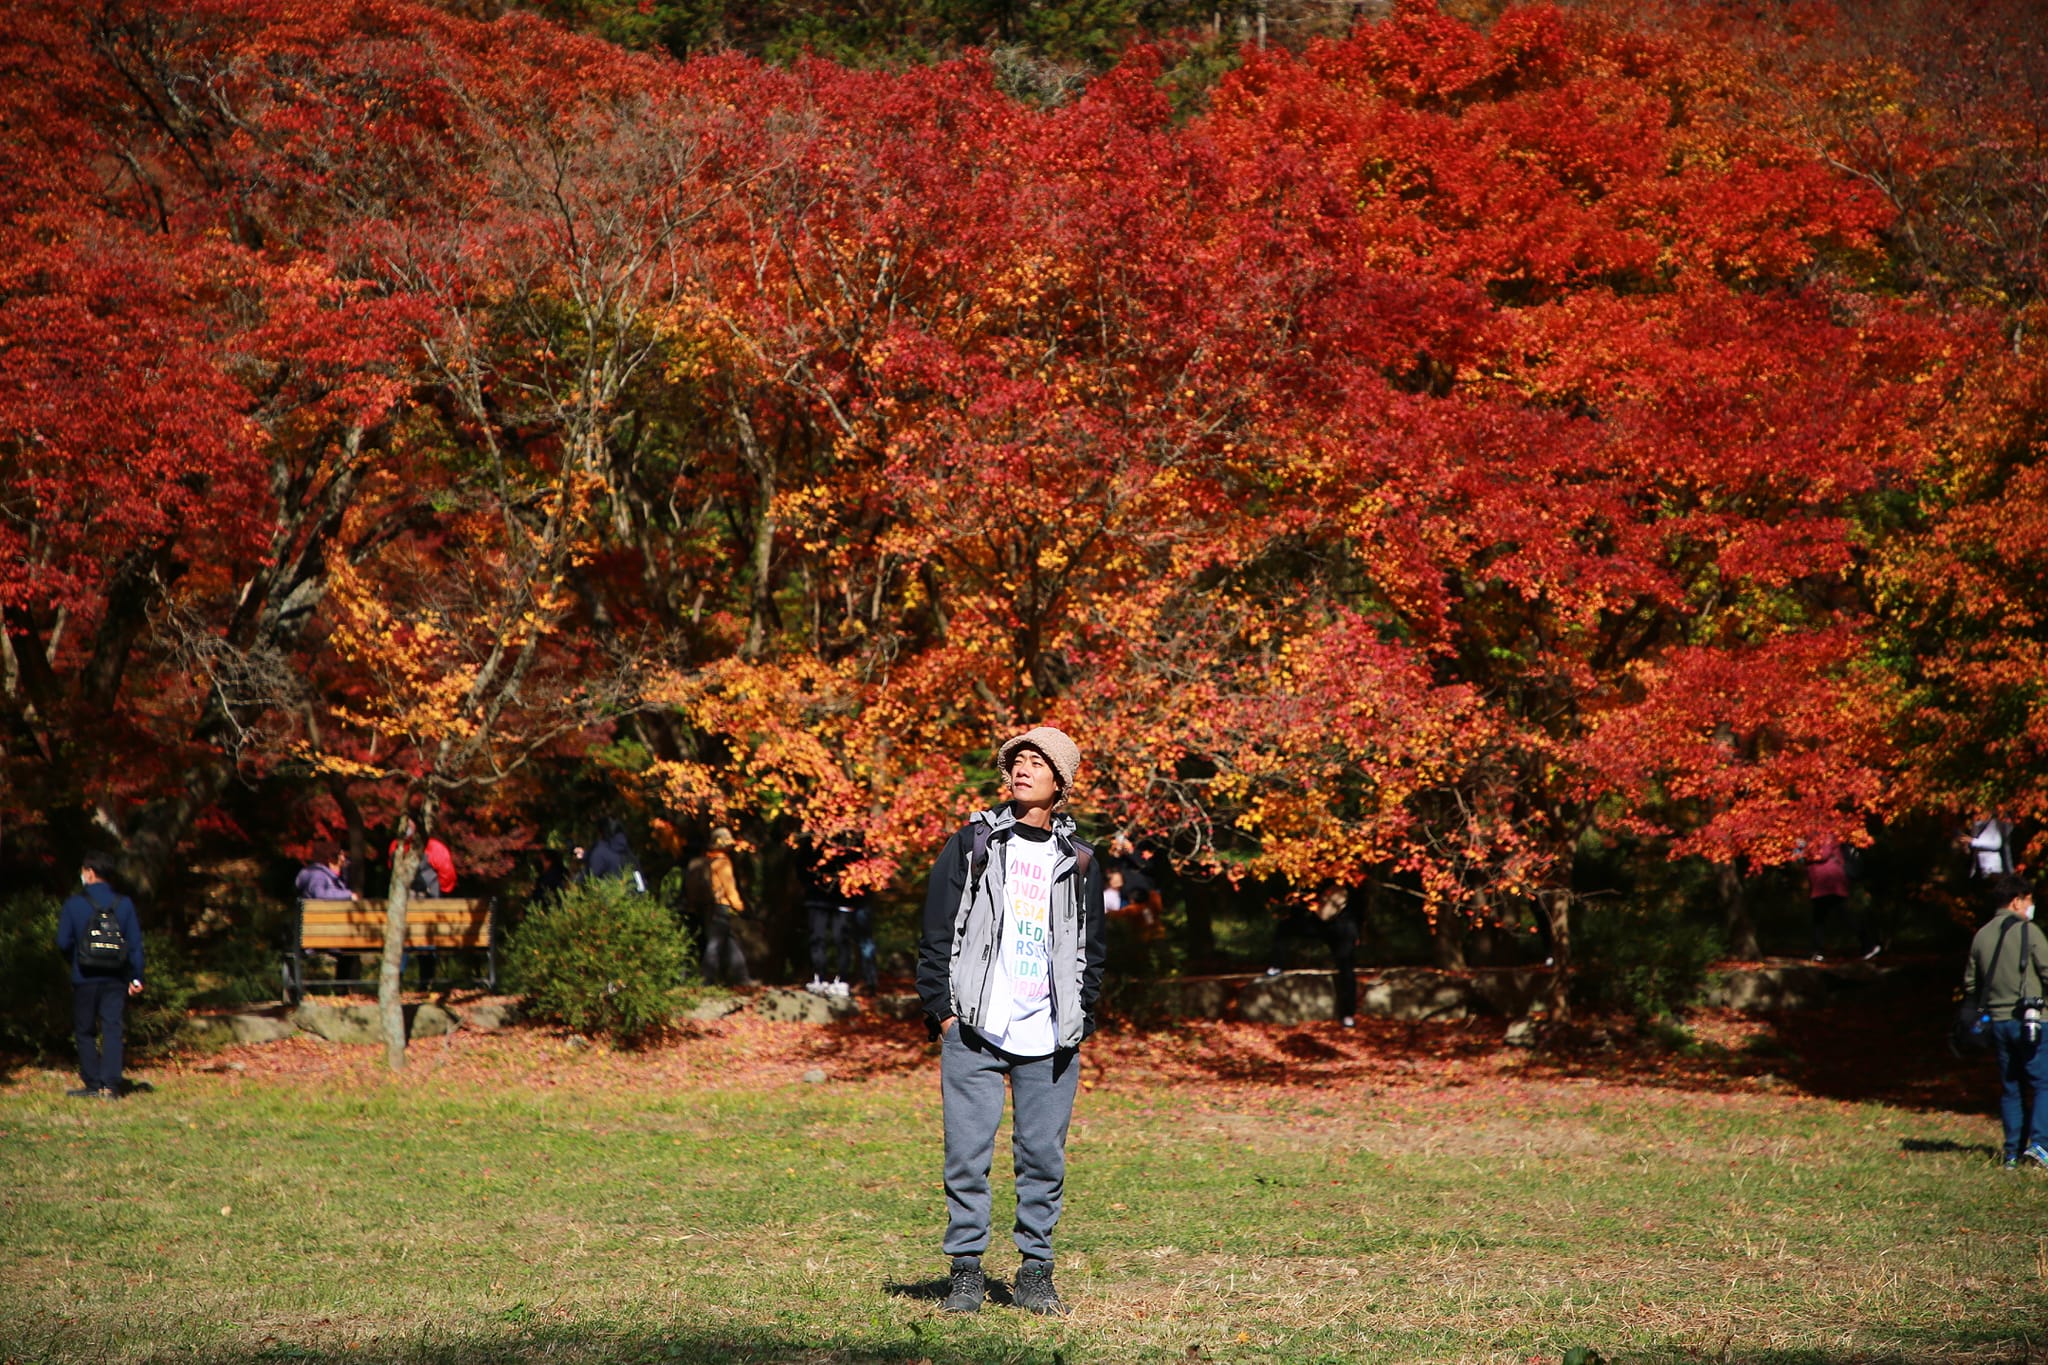 Những điểm đến mùa thu đẹp nhất ở Nhật Bản